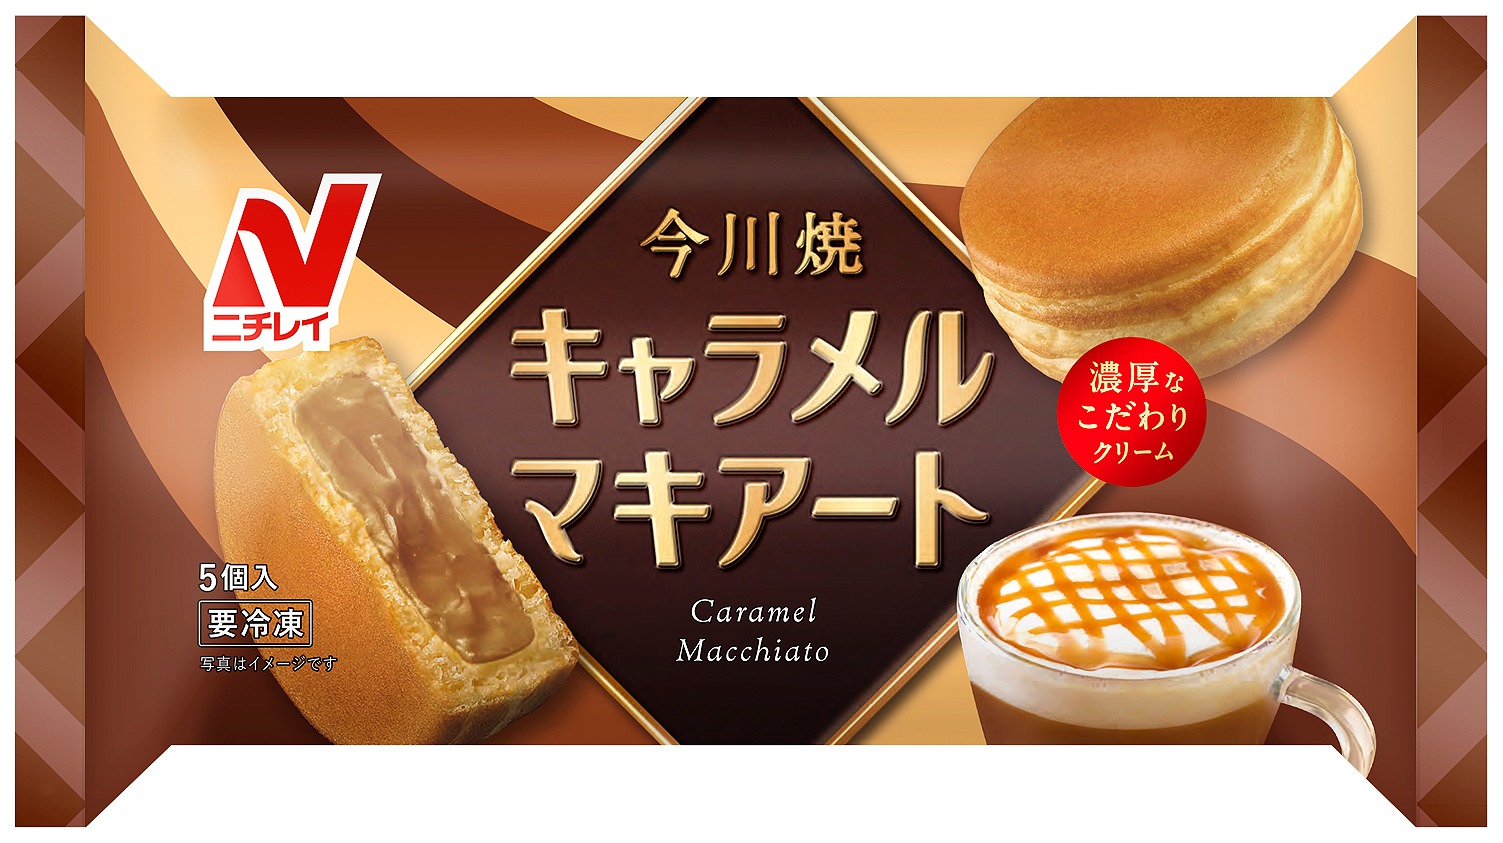 ニチレイ キャラメルマキアート味の今川焼など3商品発売 グルメ Watch